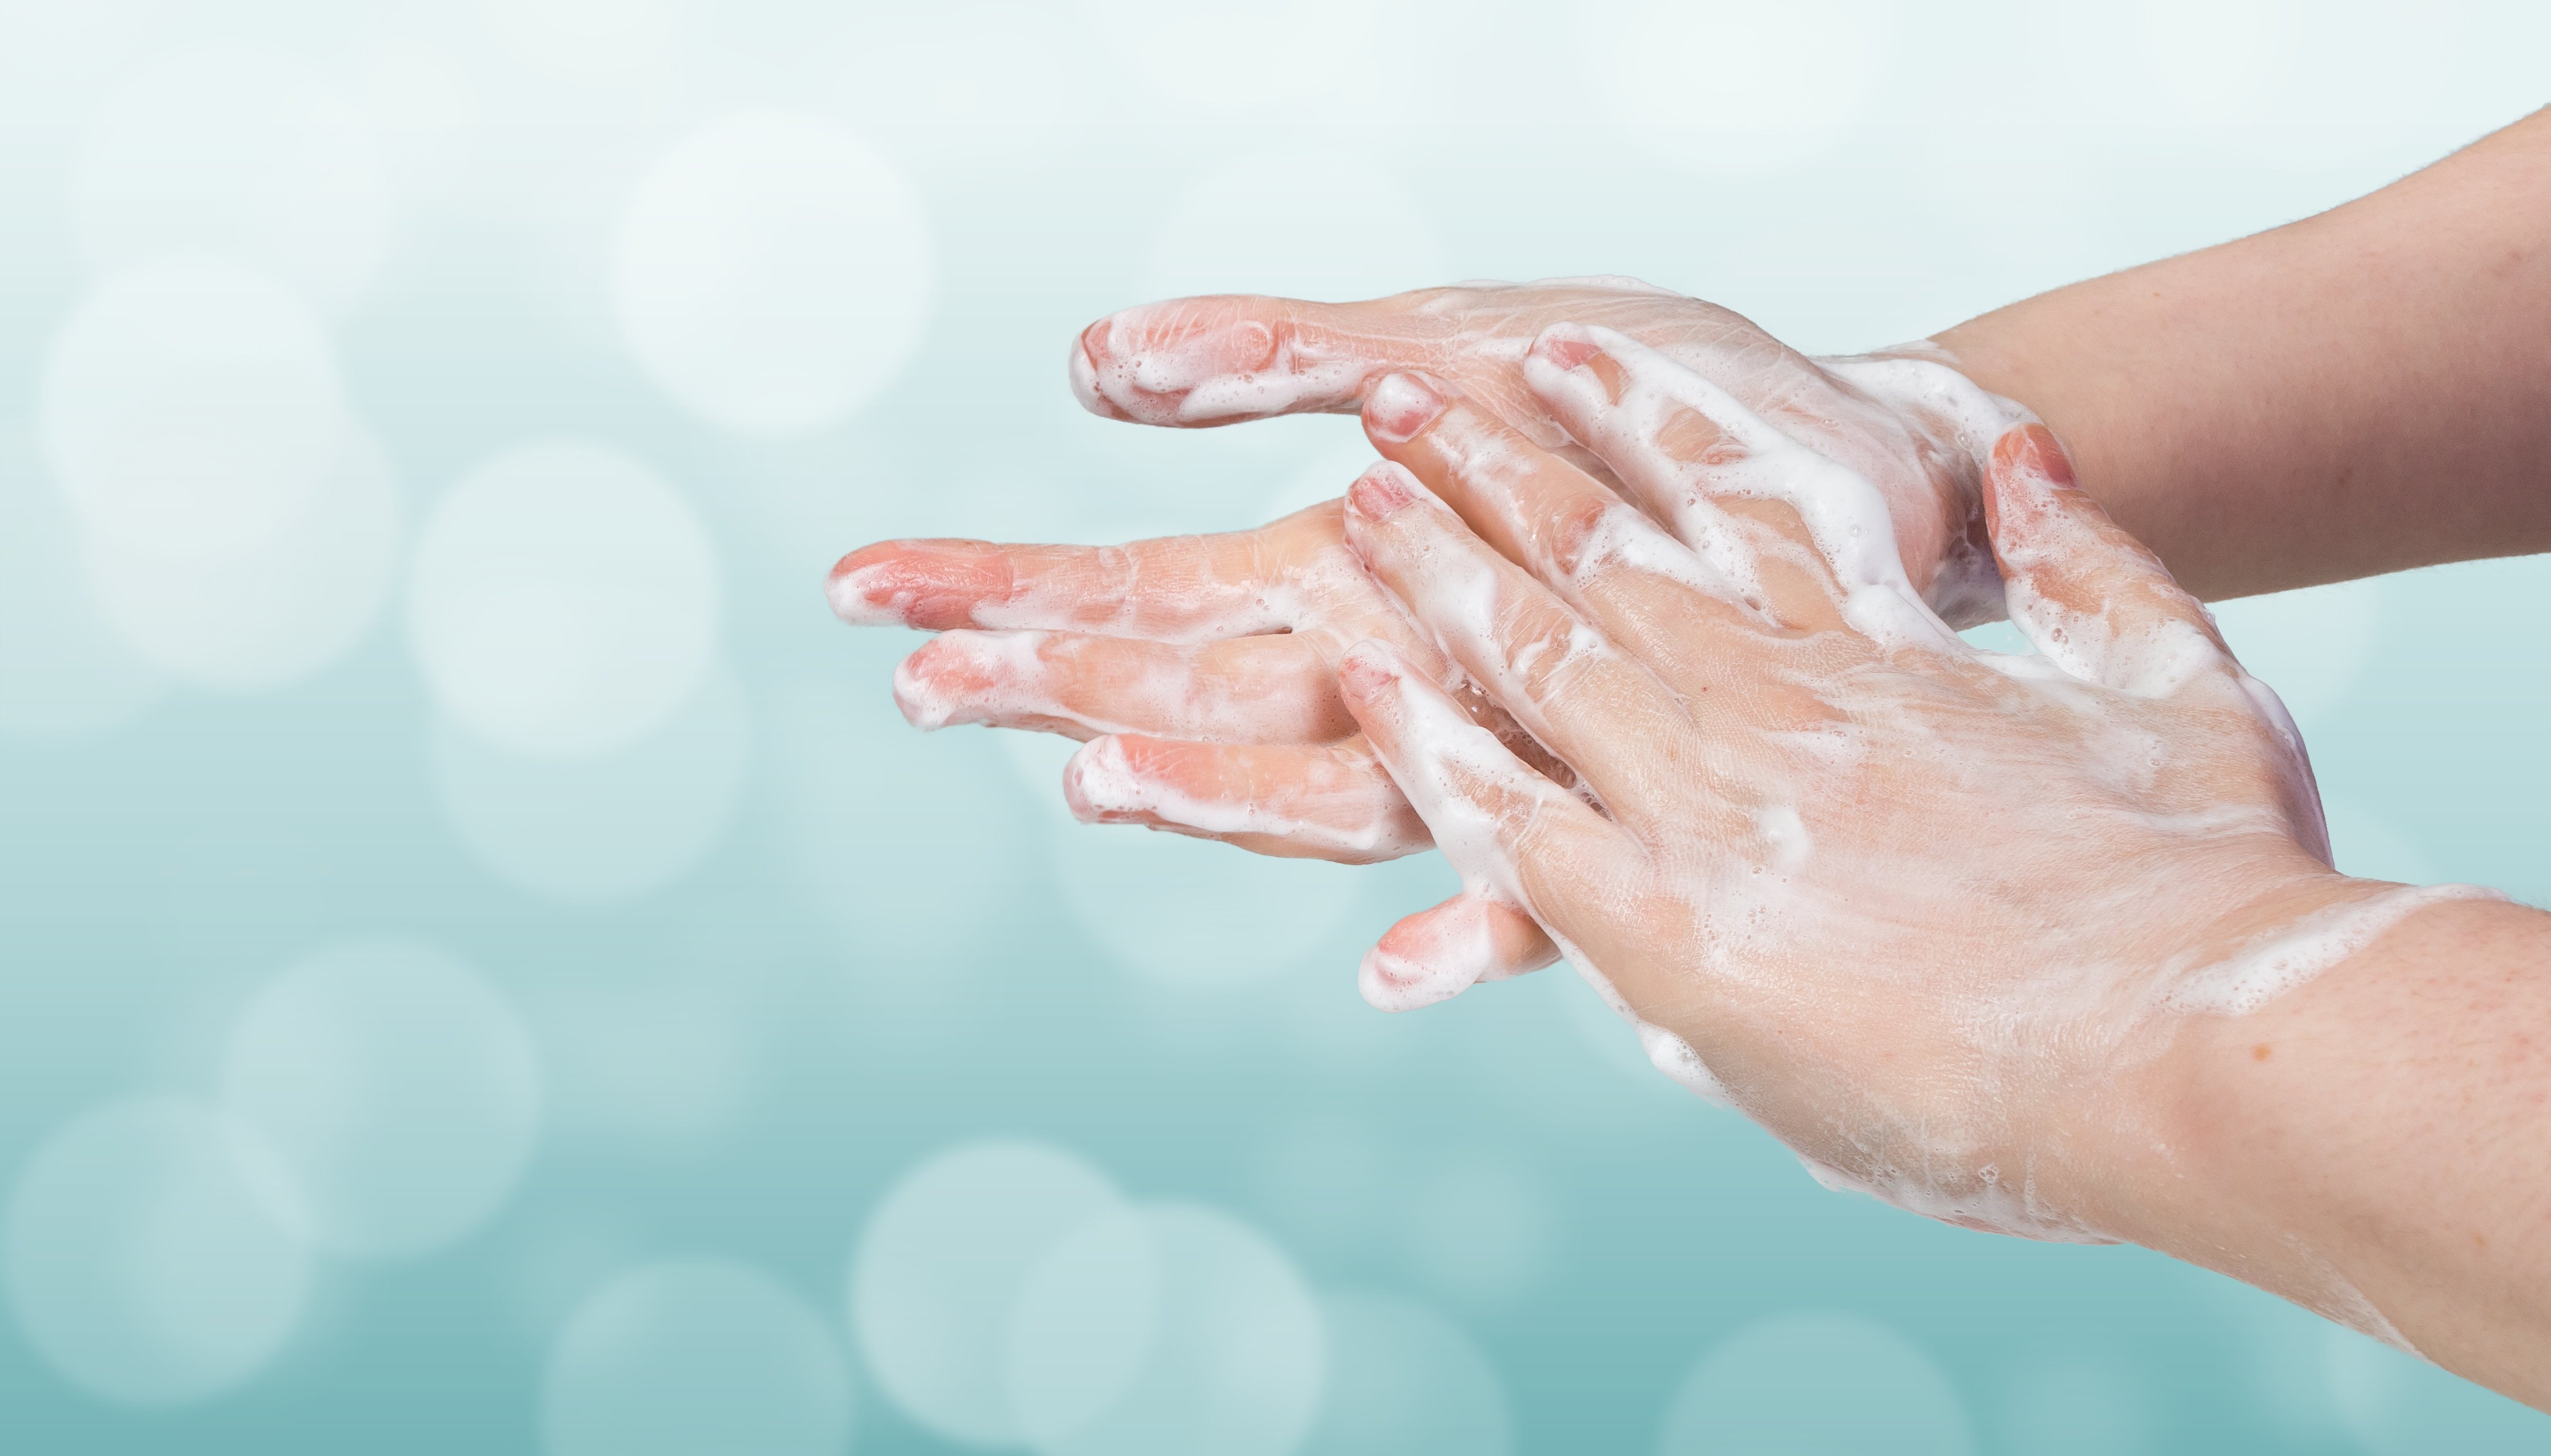 Гигиена мытья рук. Гигиена рук. Чистые руки. Руки в мыльной пене. Мыльные руки.